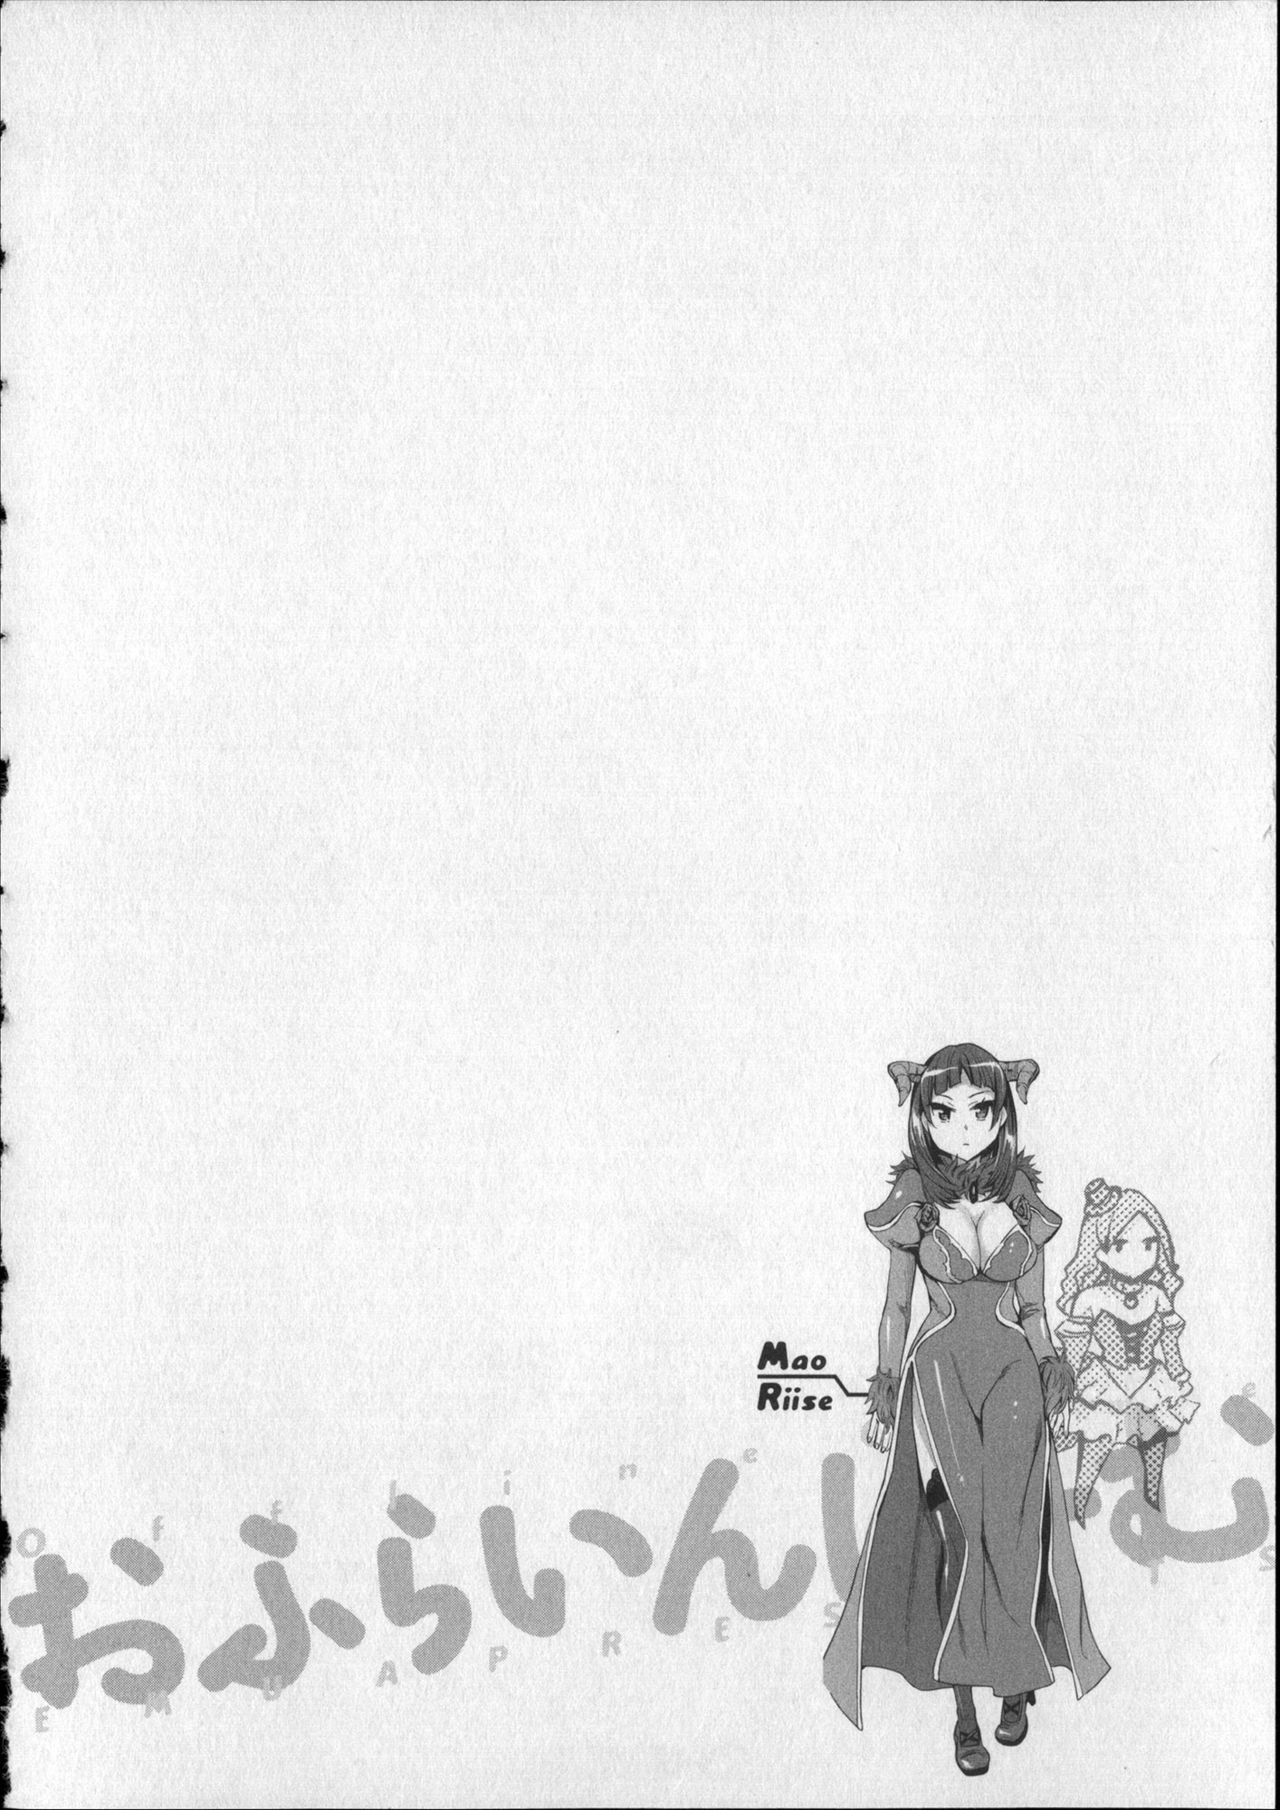 [Emua] Offline Game Vol.8 [えむあ] おふらいんげーむ 8 + イラストカード